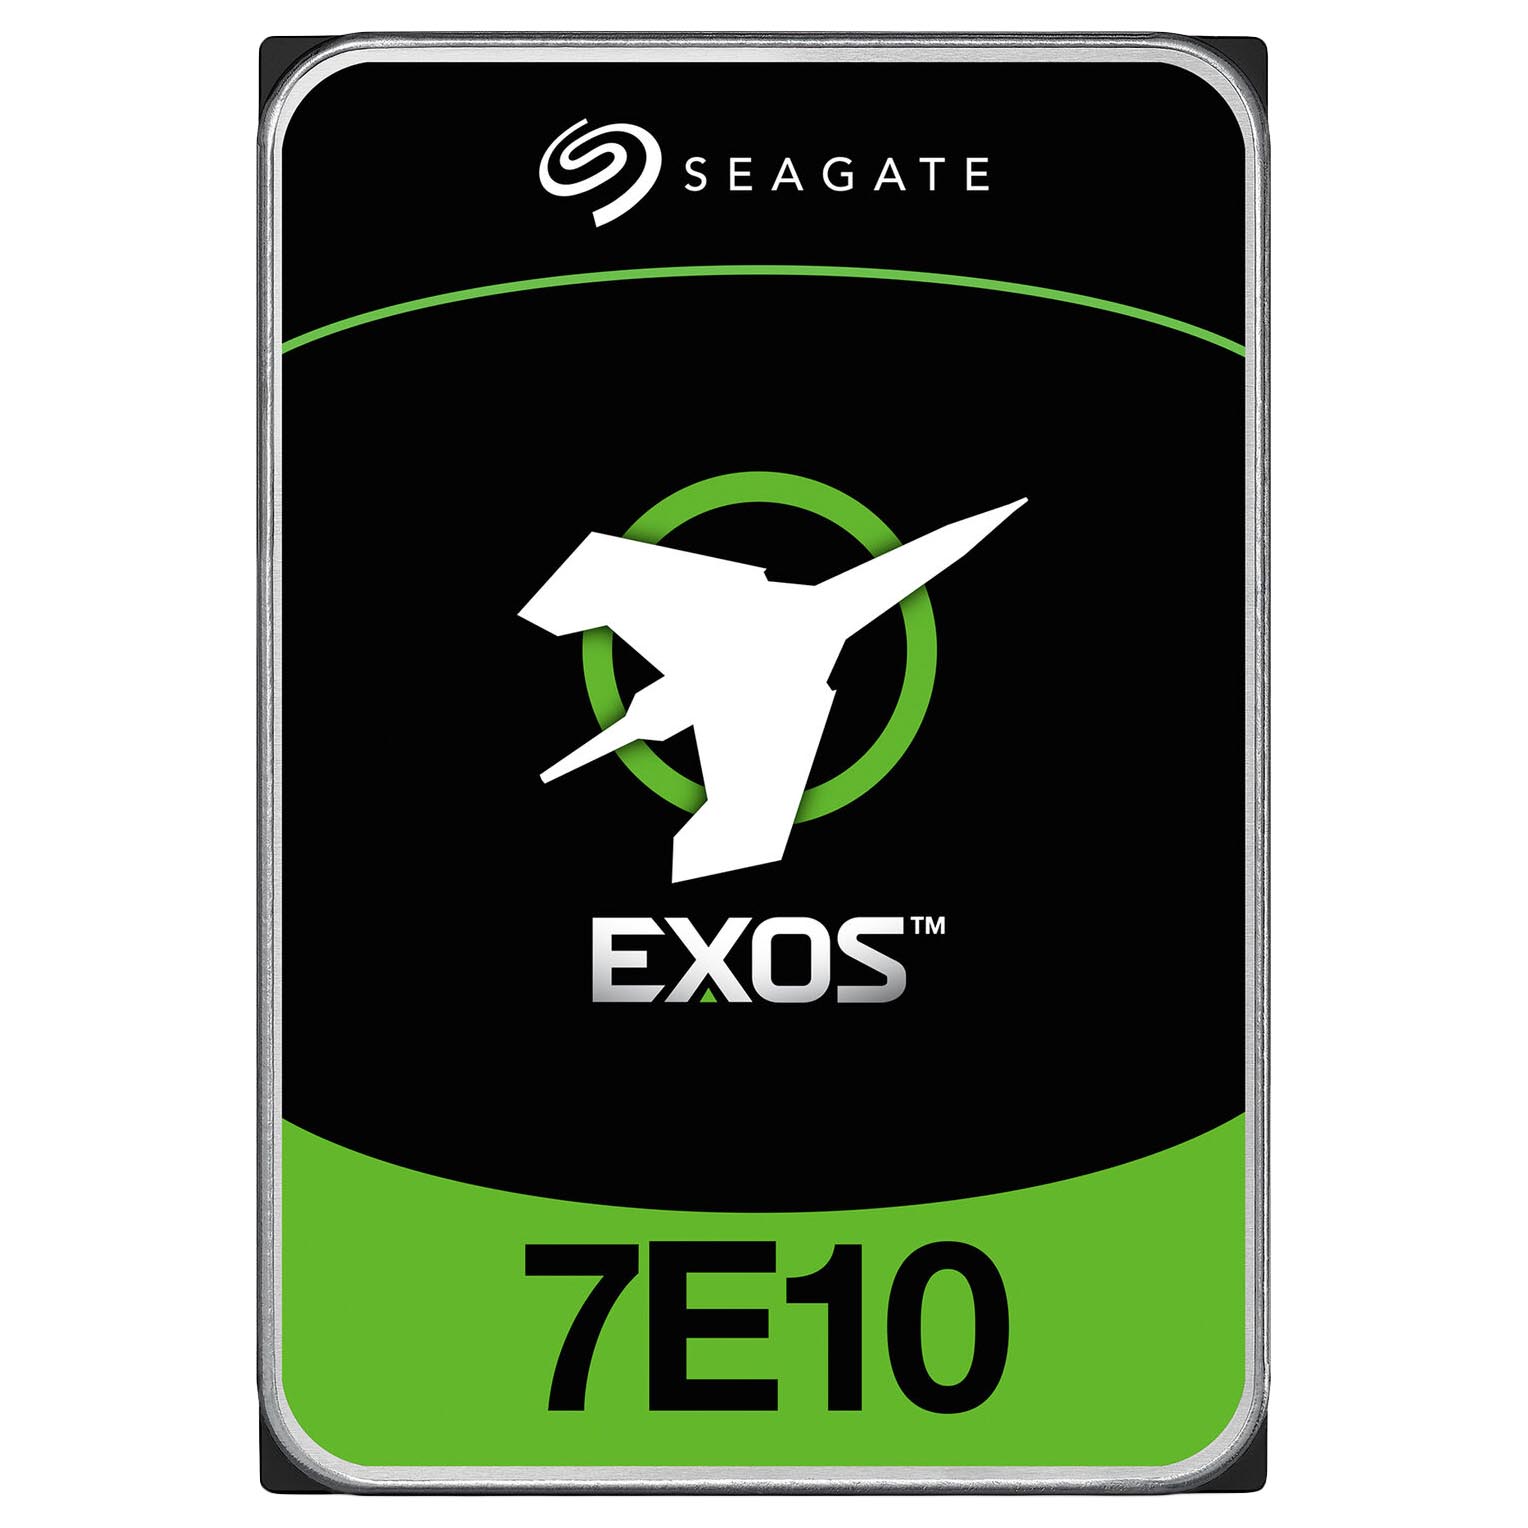 Внутренний жесткий диск Seagate Exos 7E10, ST8000NM018B, 8 Тб для серверов seagate жесткий диск seagate st2000nm0021 2tb 7200 sas 3 5 hdd